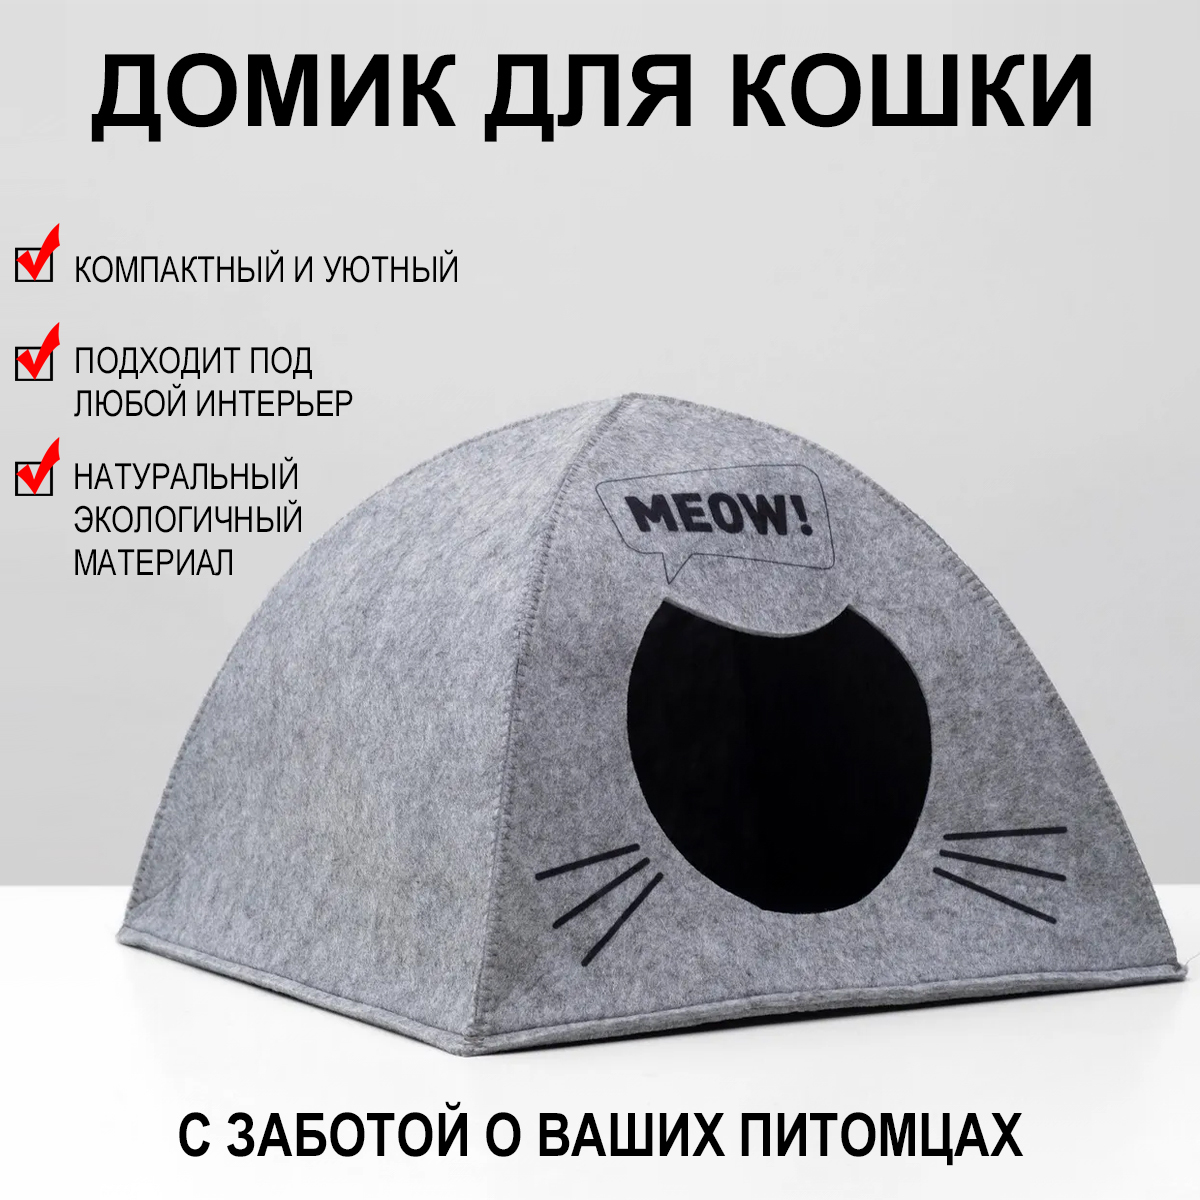 Выставочная палатка для кошки. Как выбрать? -Кошки -Статьи